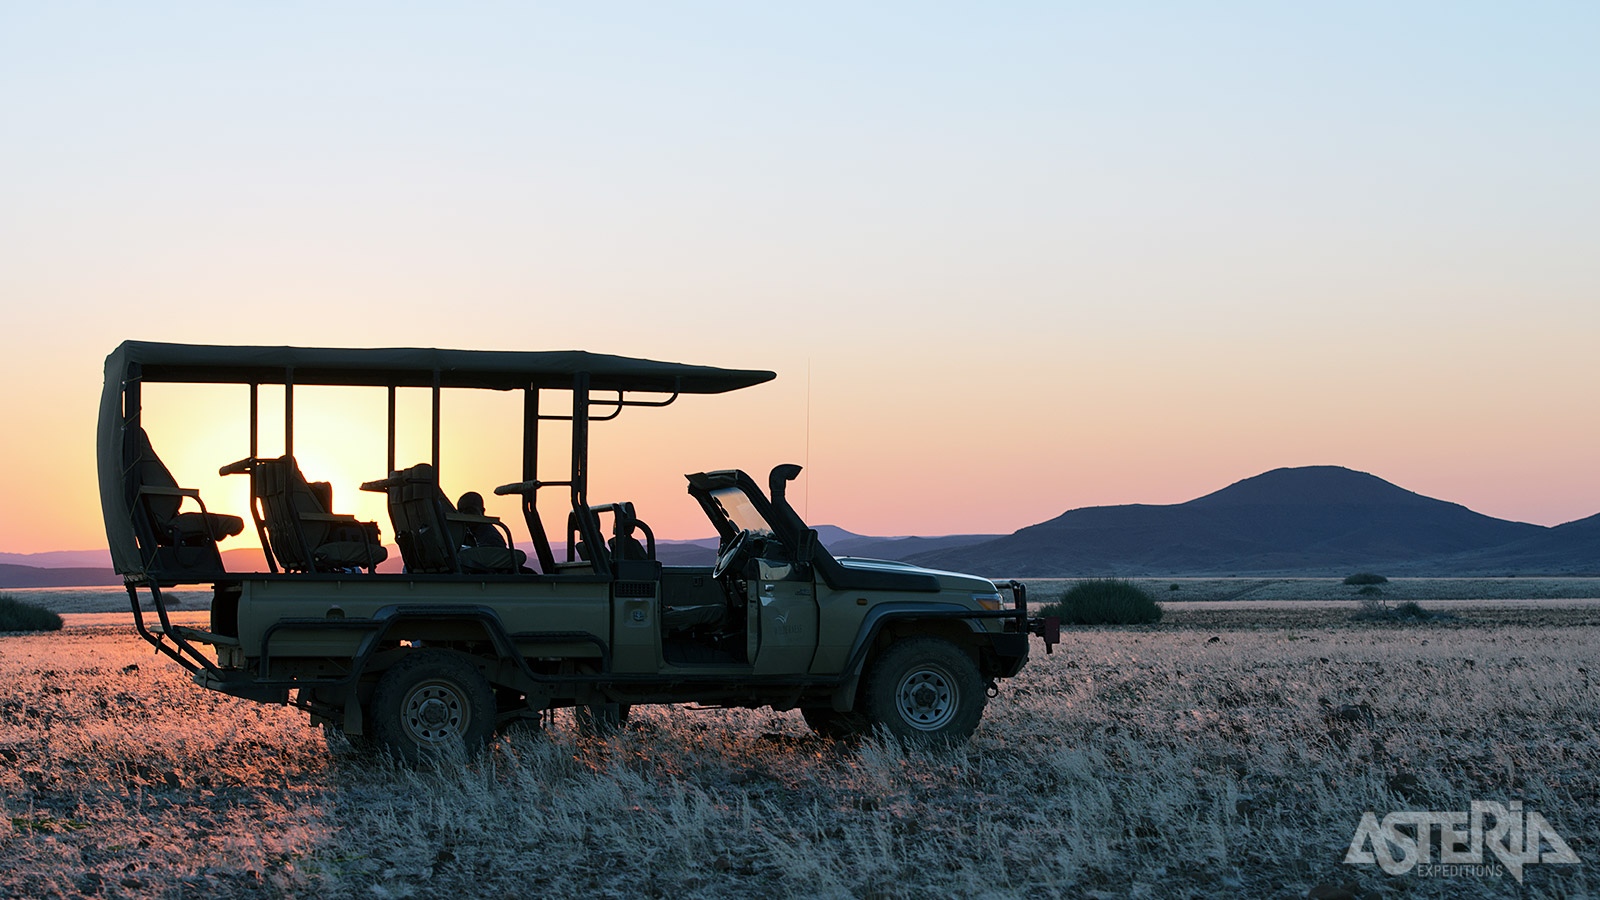 Tijdens dag- en nachtsafari’s kan je in het Etosha National Park de dieren observeren